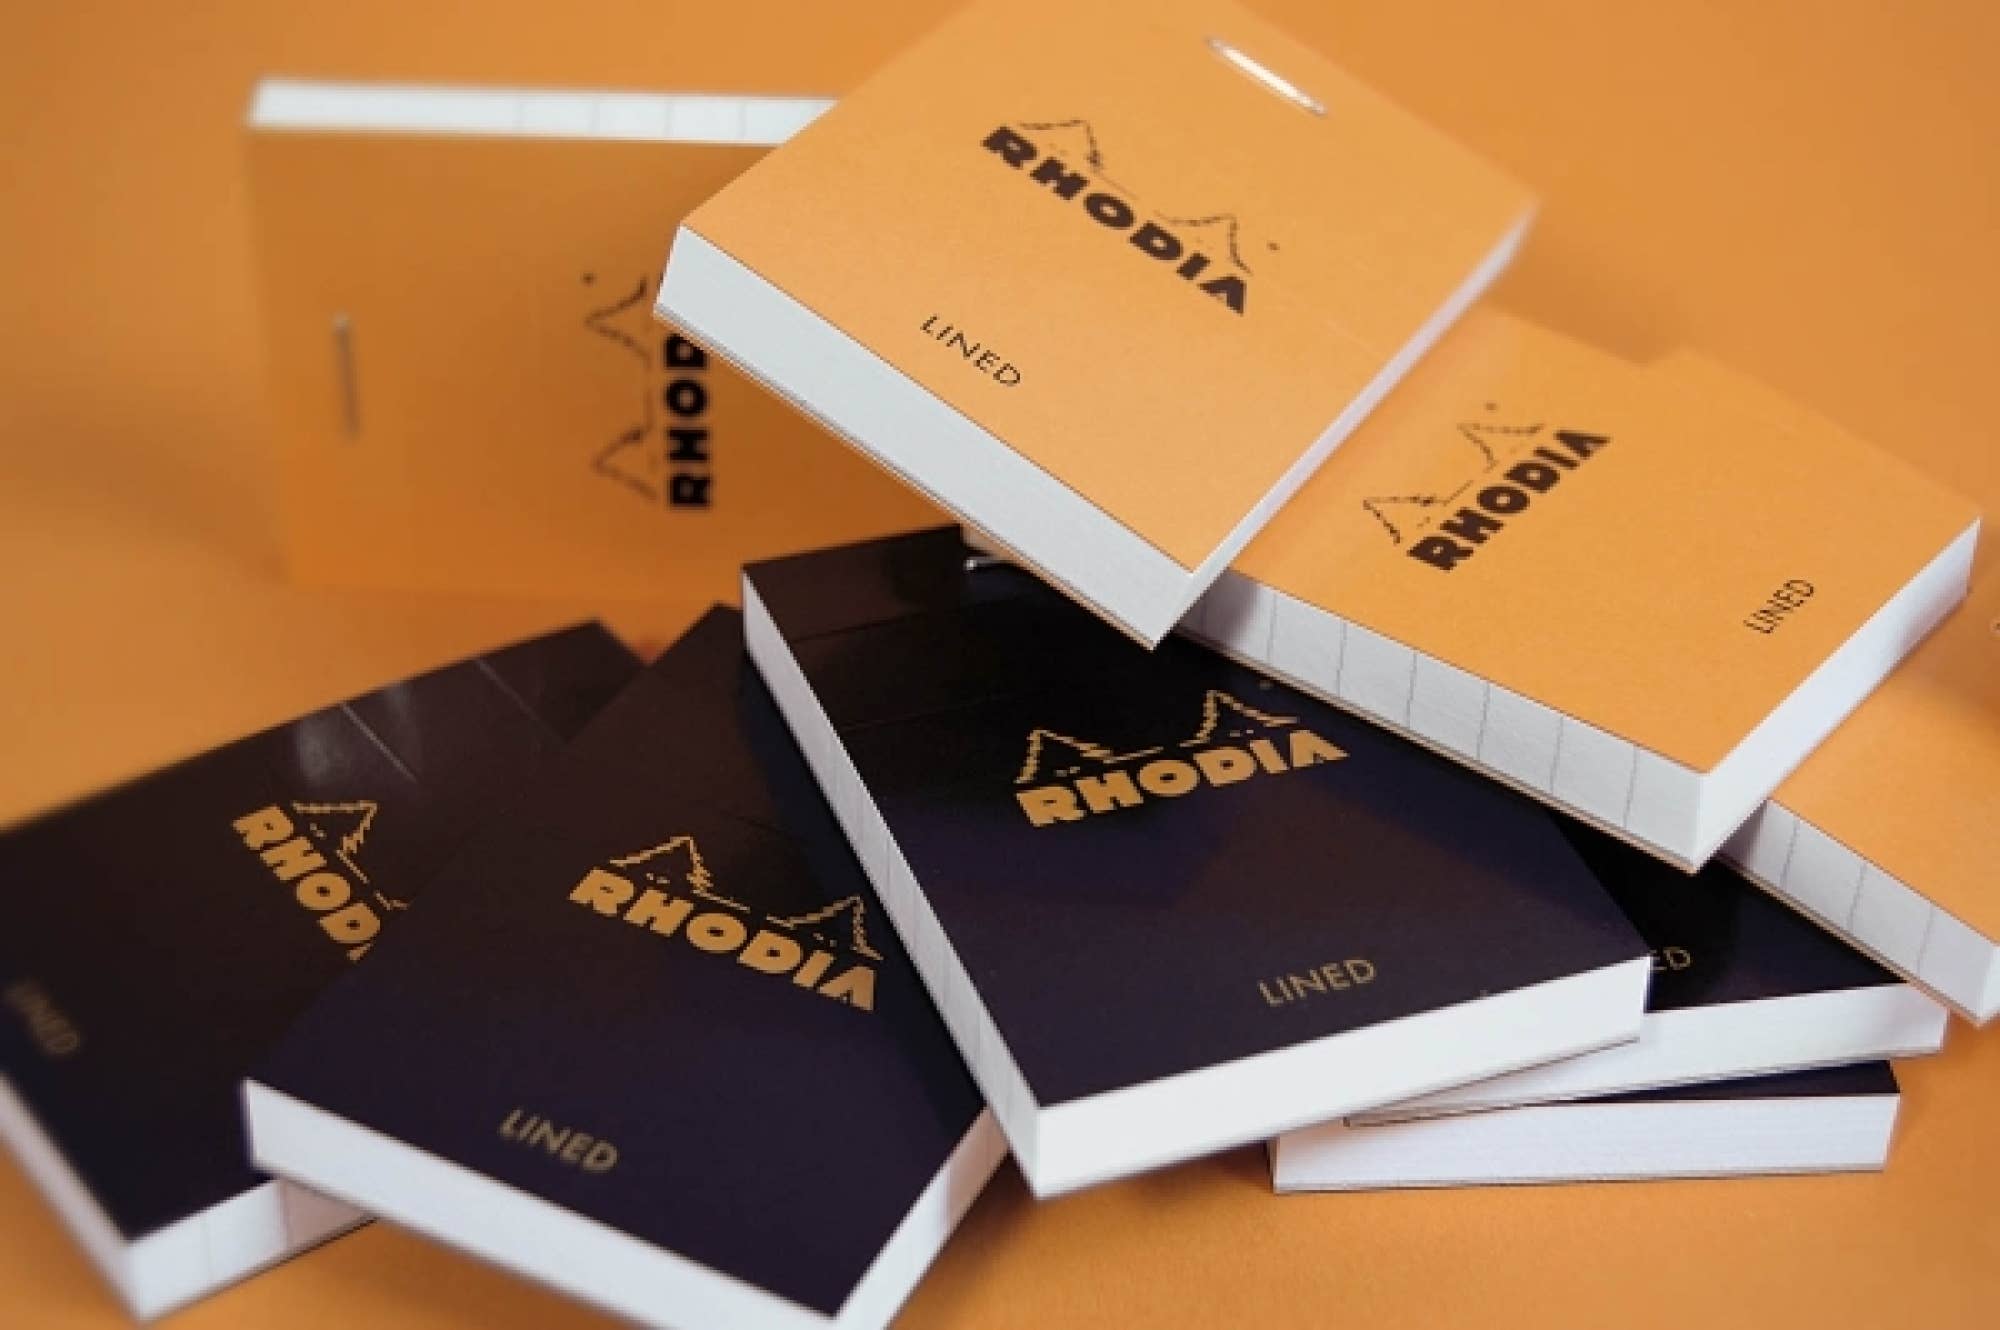 Rhodia Classic Notepad in Orange